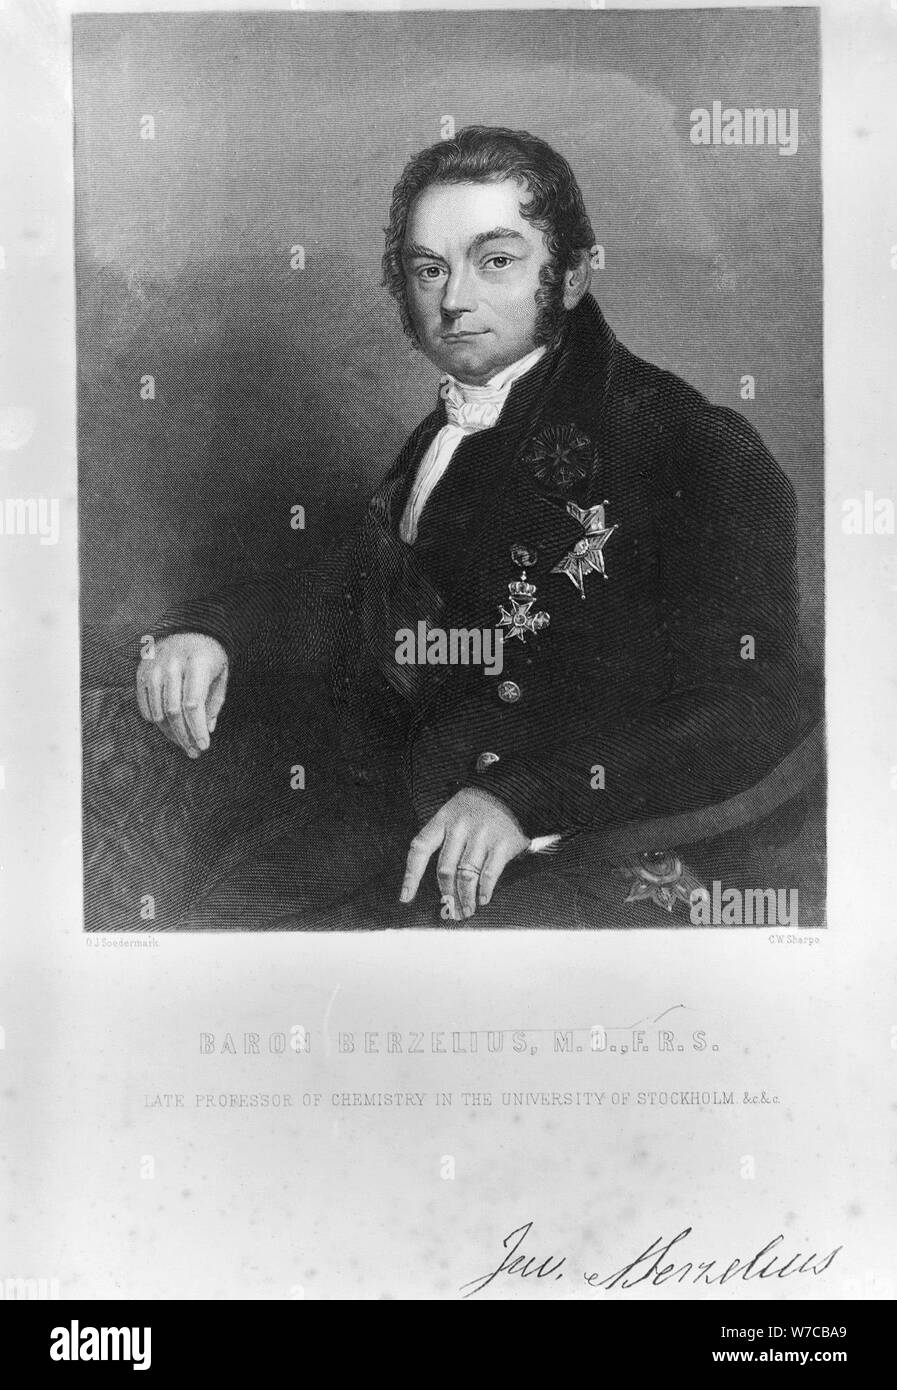 Jons Jacob Berzelius, químico sueco, a principios del siglo XIX. Artista: Desconocido Foto de stock